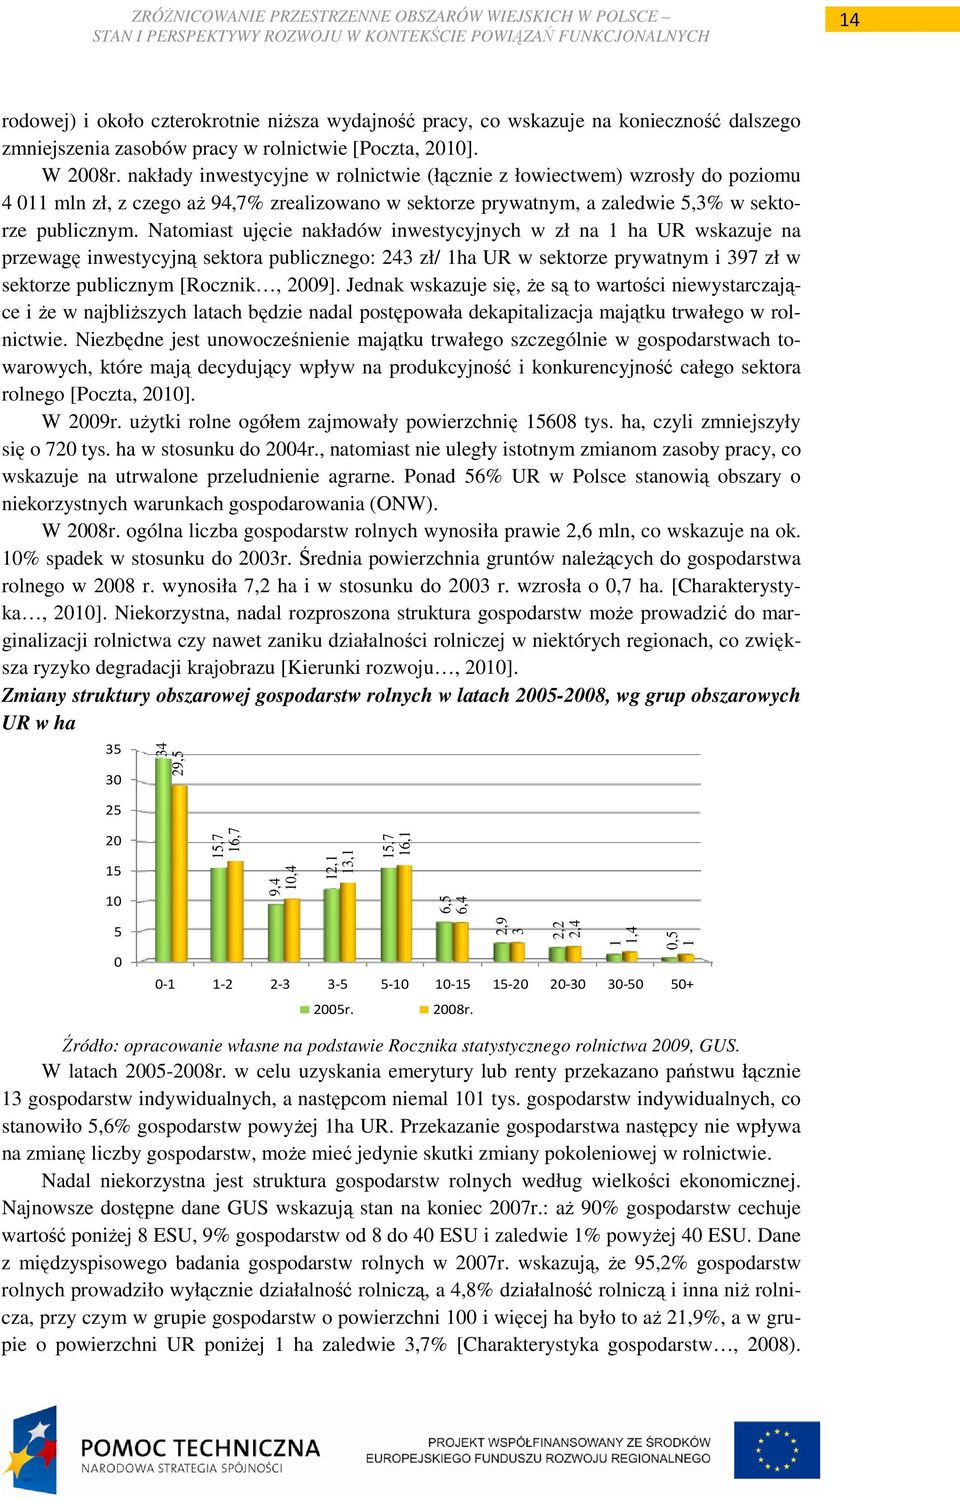 Natomiast ujęcie nakładów inwestycyjnych w zł na 1 ha UR wskazuje na przewagę inwestycyjną sektora publicznego: 243 zł/ 1ha UR w sektorze prywatnym i 397 zł w sektorze publicznym [Rocznik, 2009].